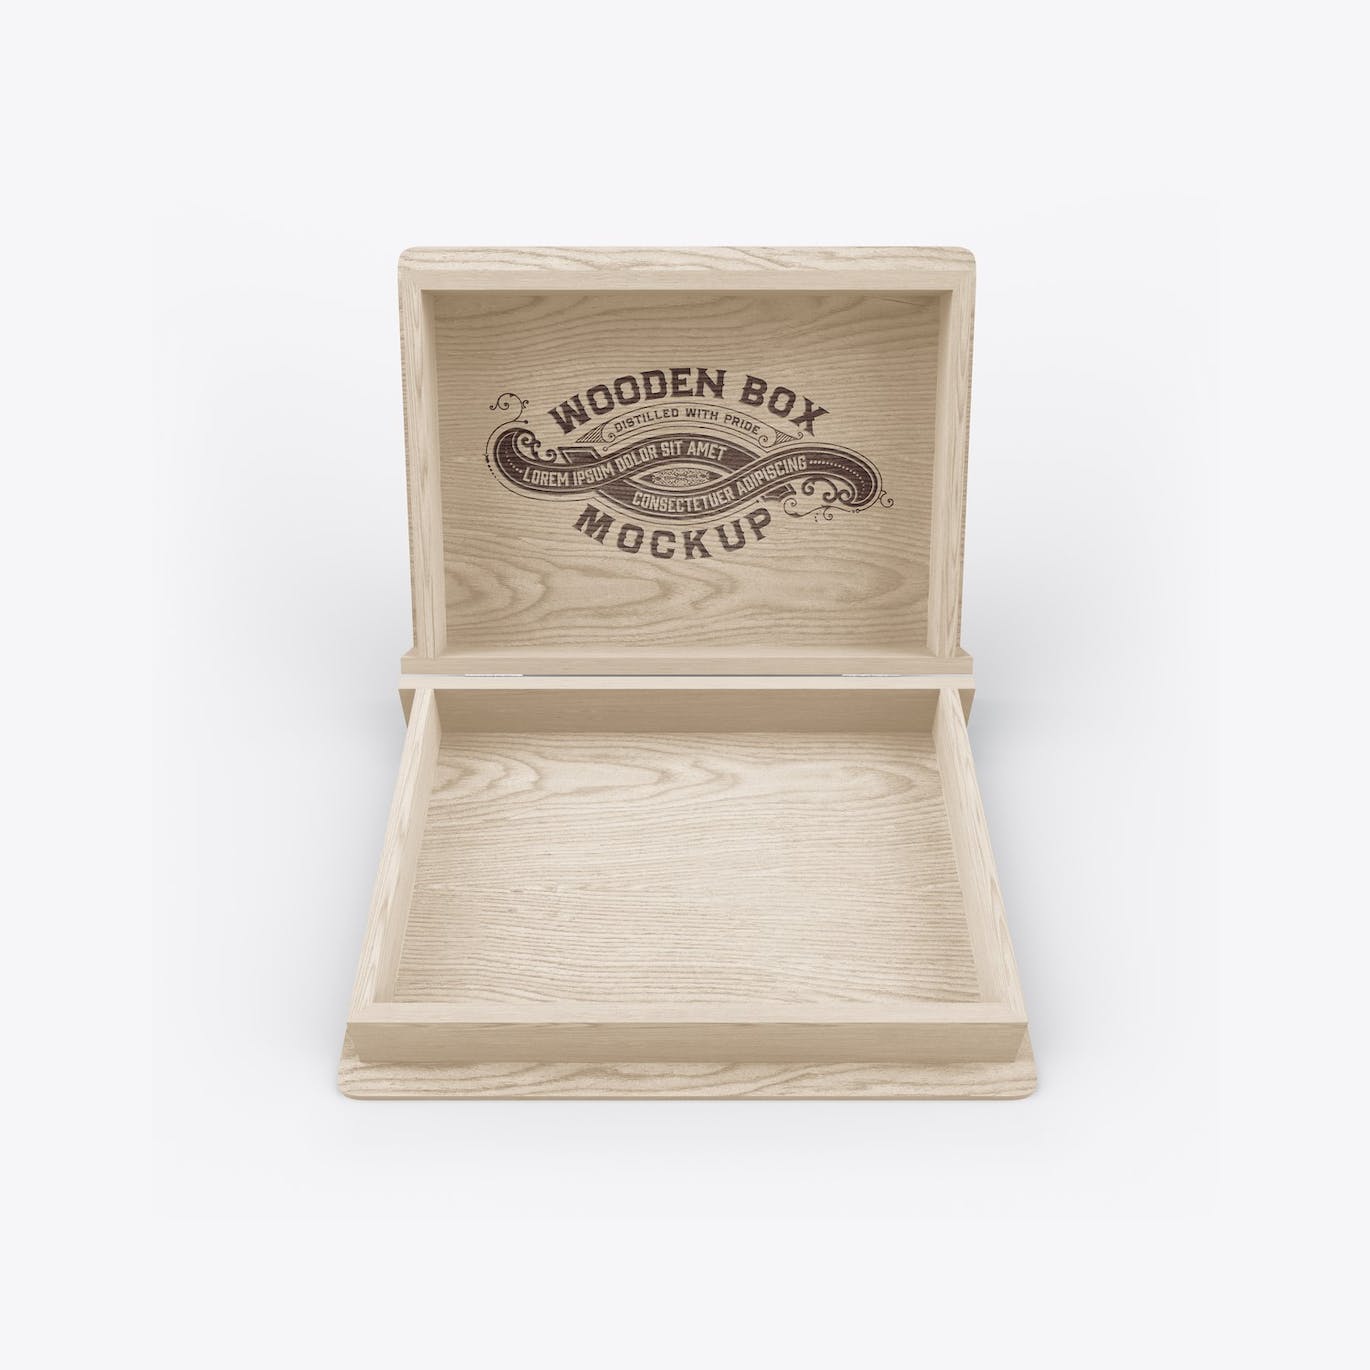 木箱木盒Logo设计样机 Wooden Box Mockup 样机素材 第7张